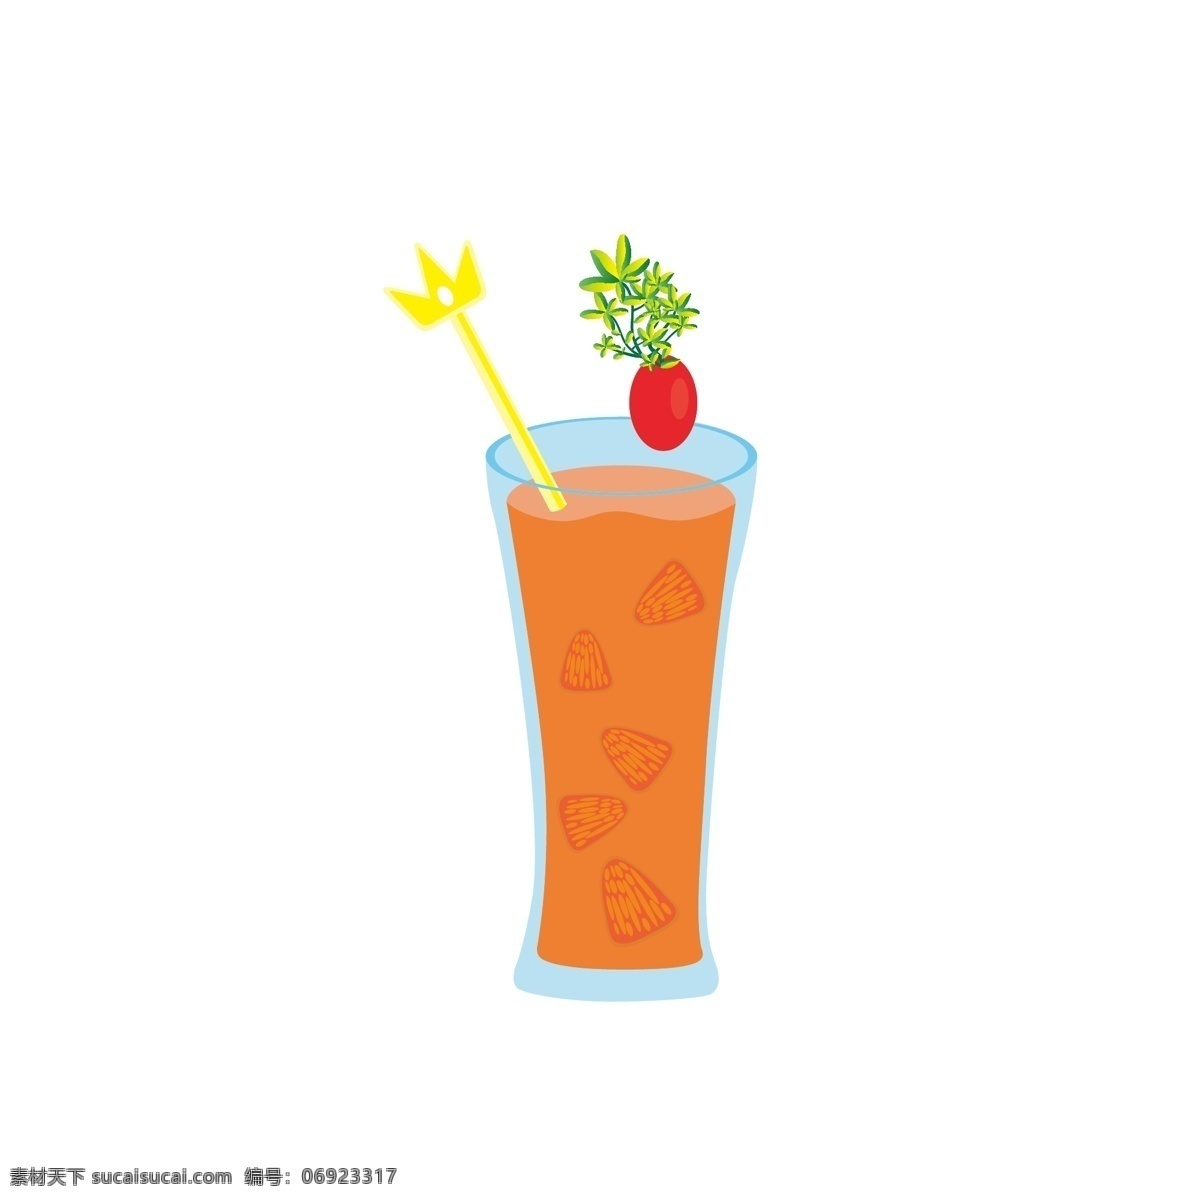 原创 果汁 橙汁 夏季 饮品 夏季饮品 饮料 玻璃杯 柚子汁